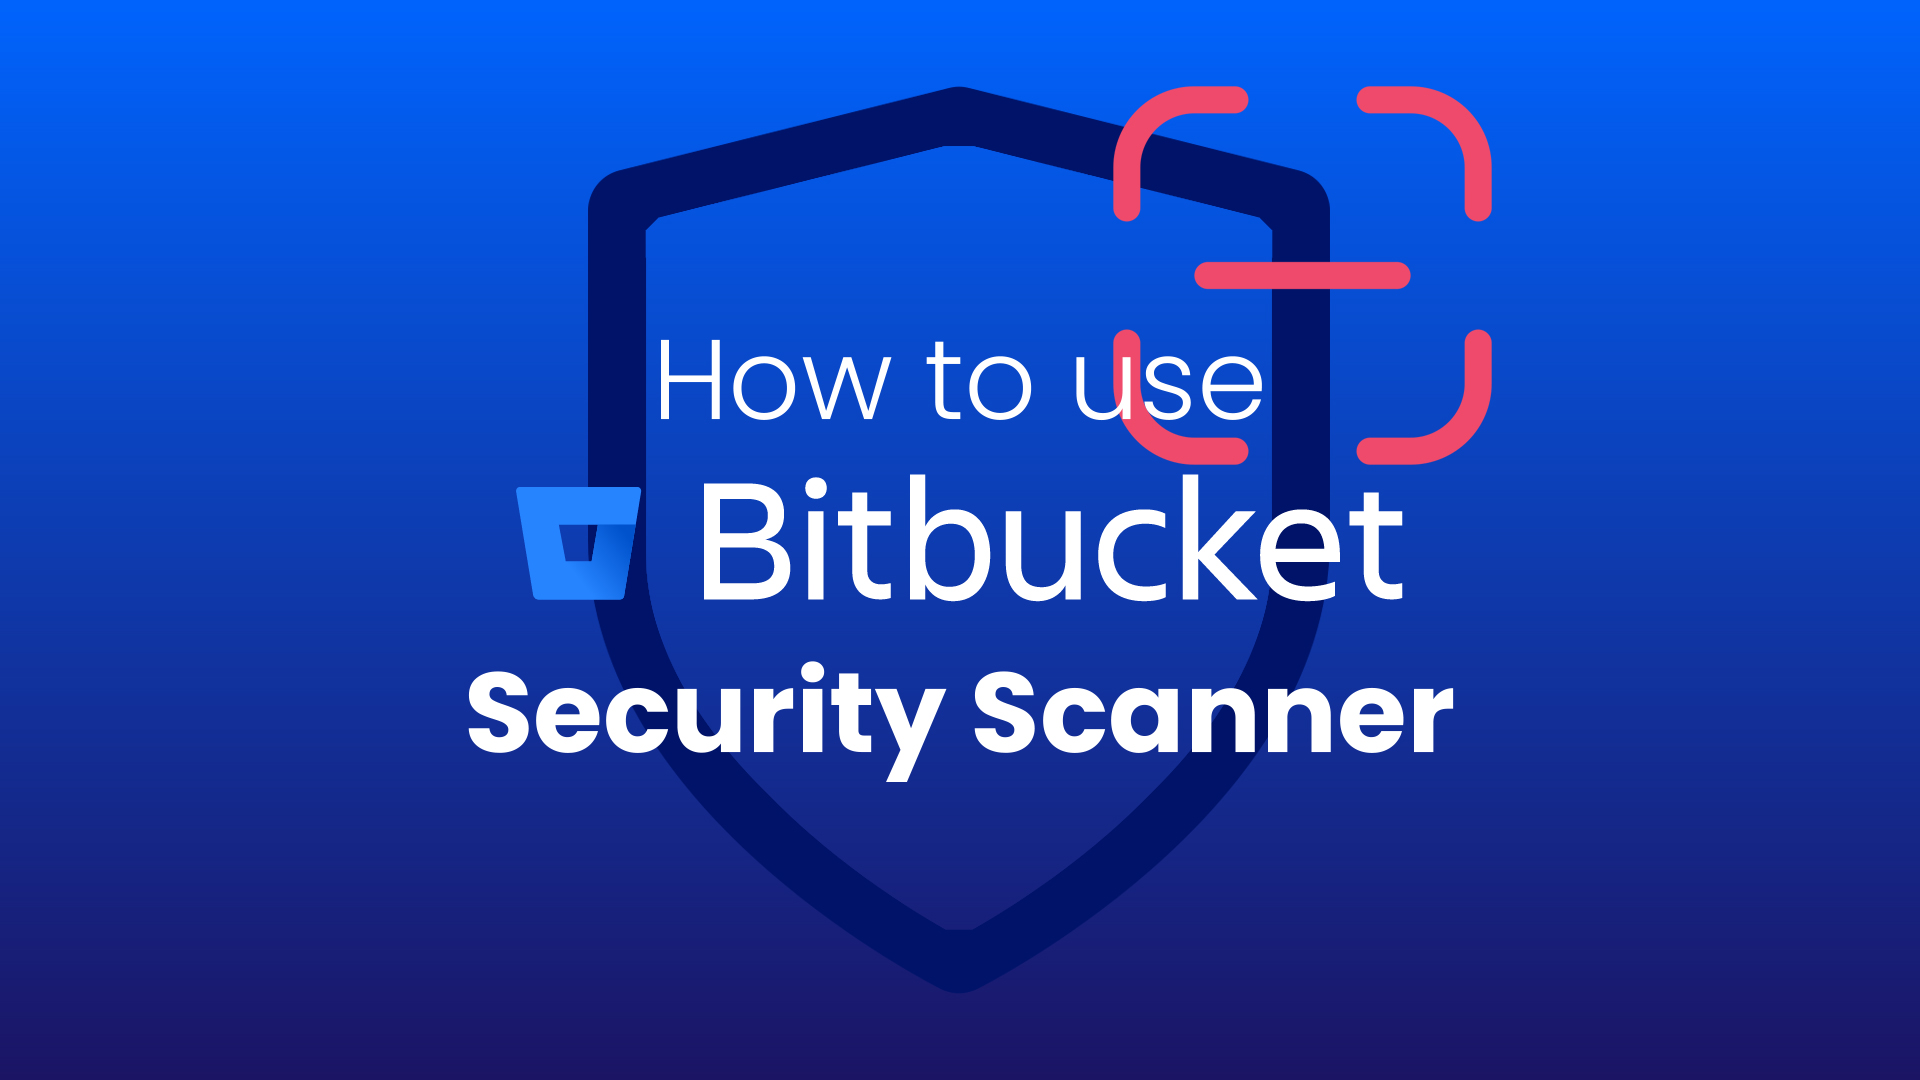 Bitbucket Security Scanner